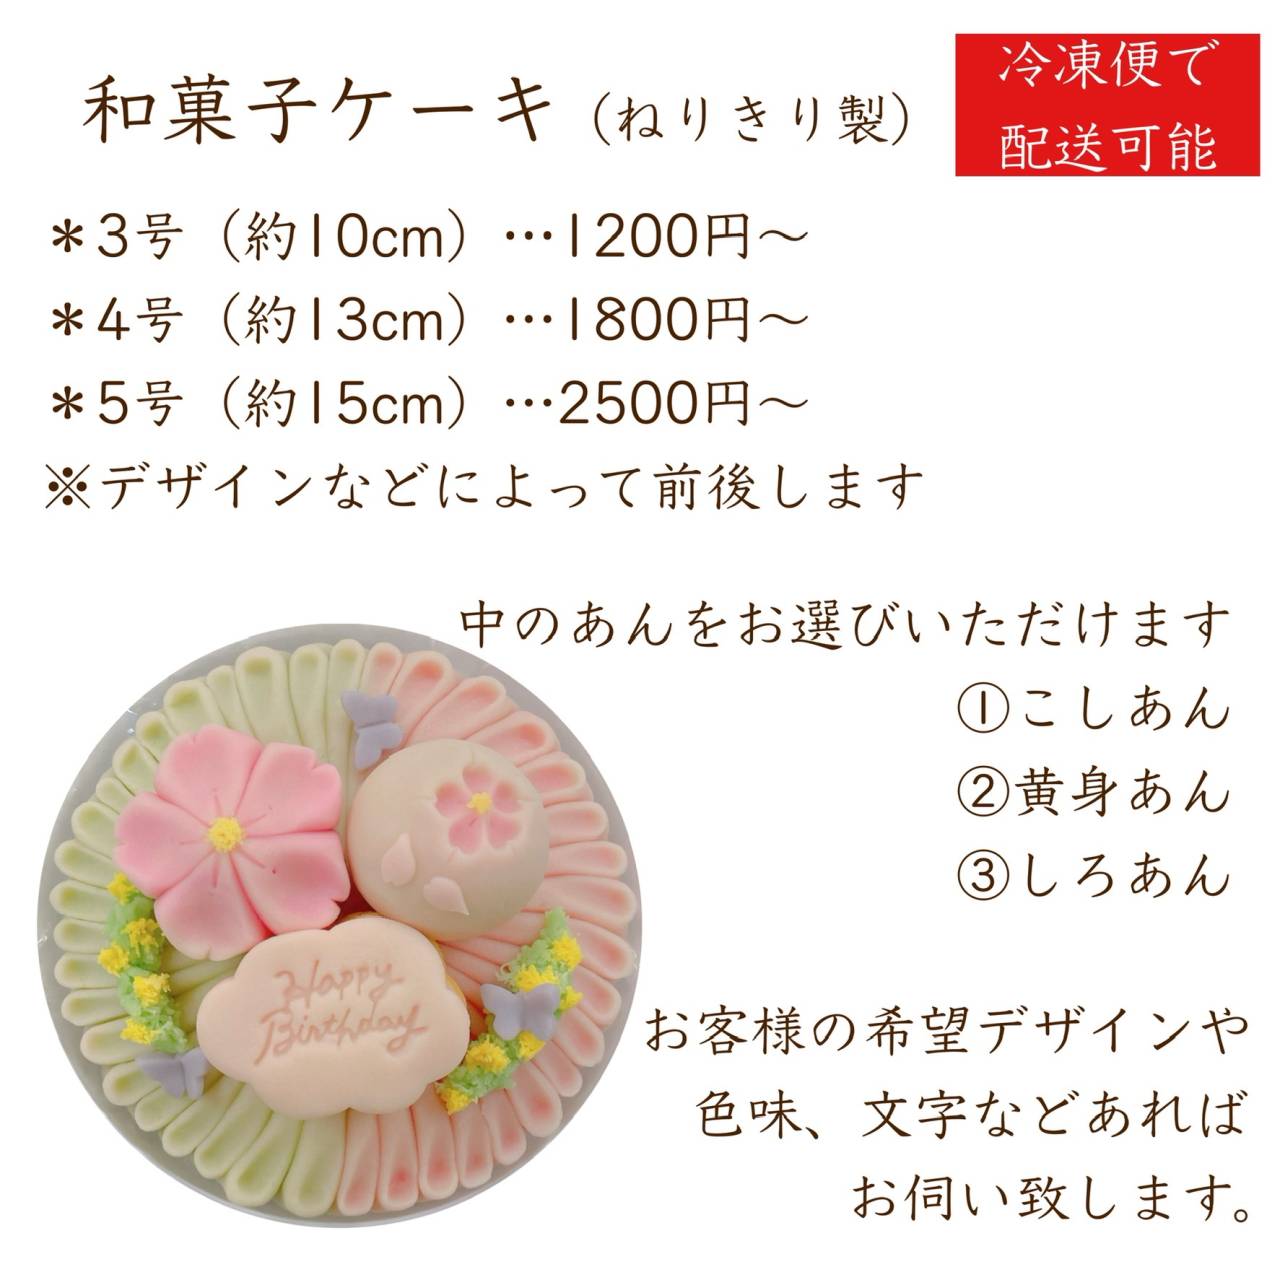 和菓子ケーキ【茨木市・和菓子屋】